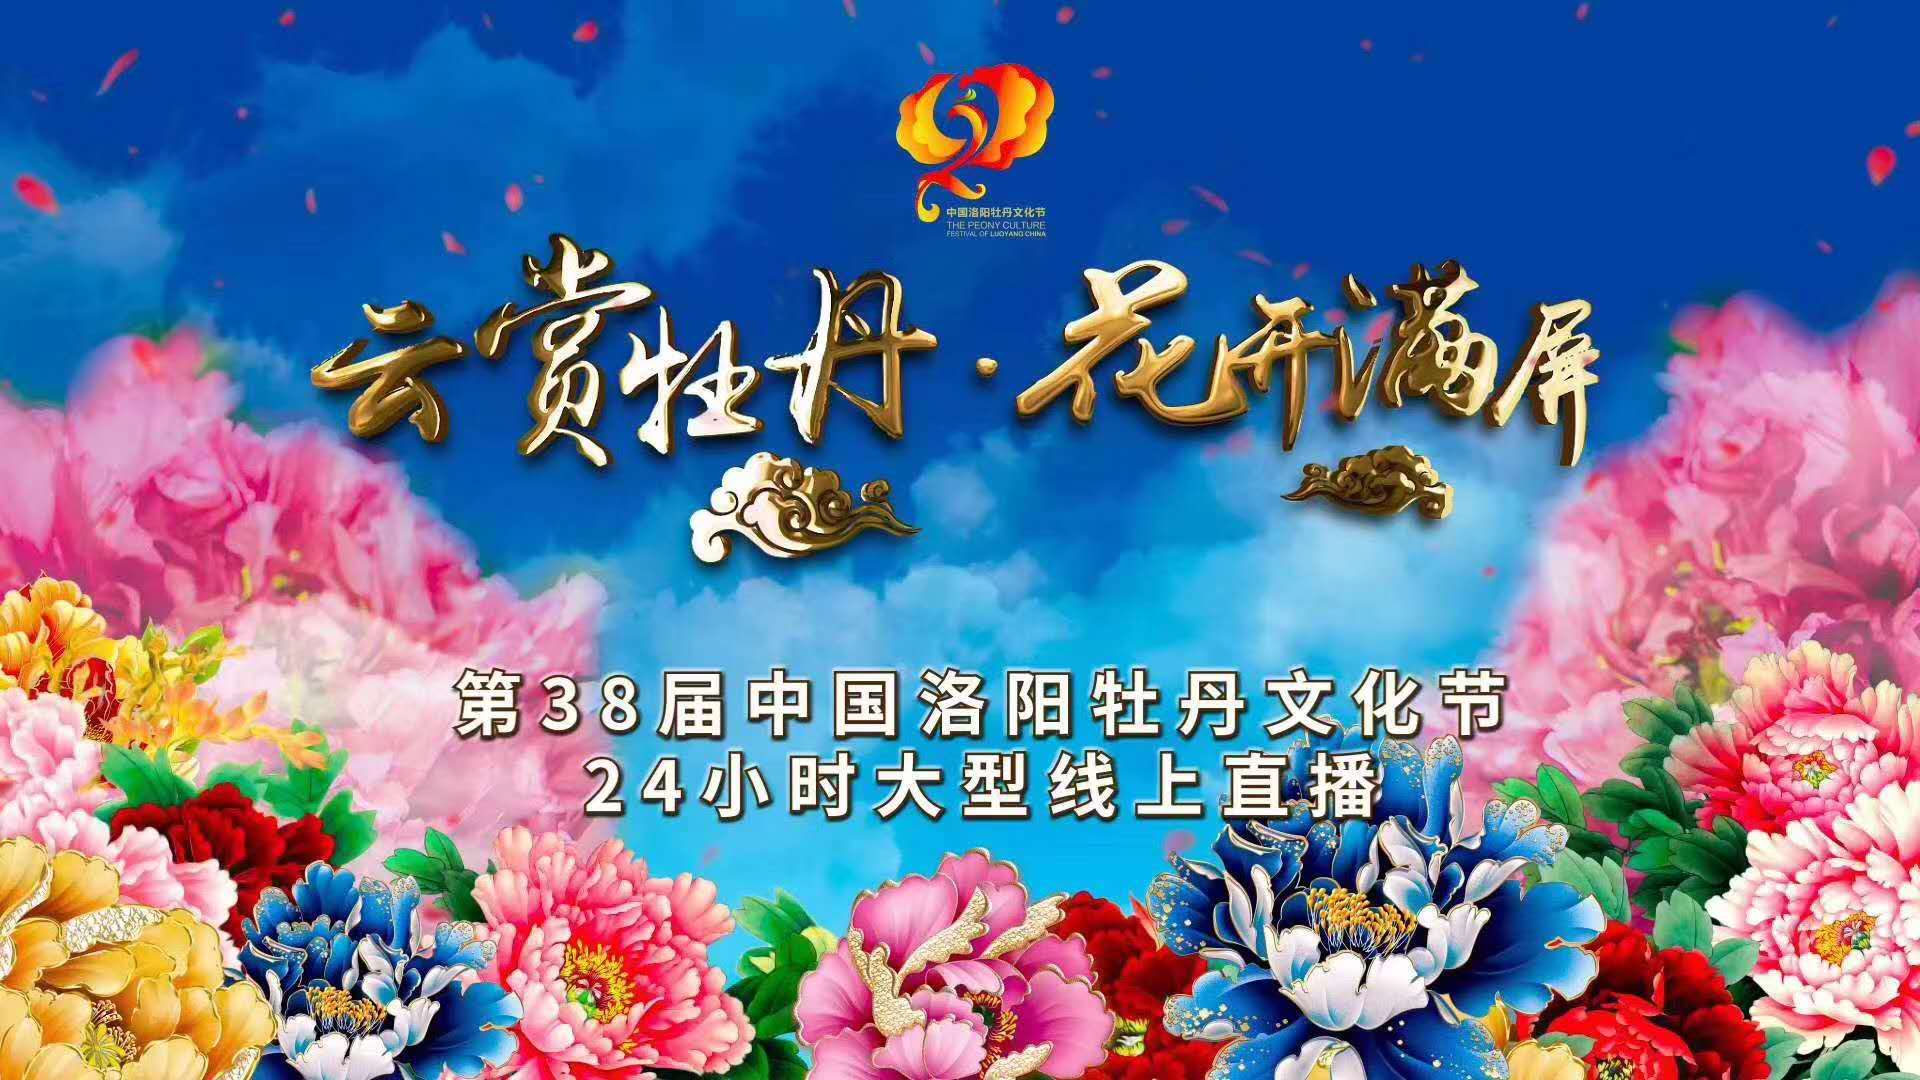 Xinhua Silk Road: เมืองลั่วหยางถ่ายทอดสดออนไลน์เทศกาลชมดอกโบตั๋น